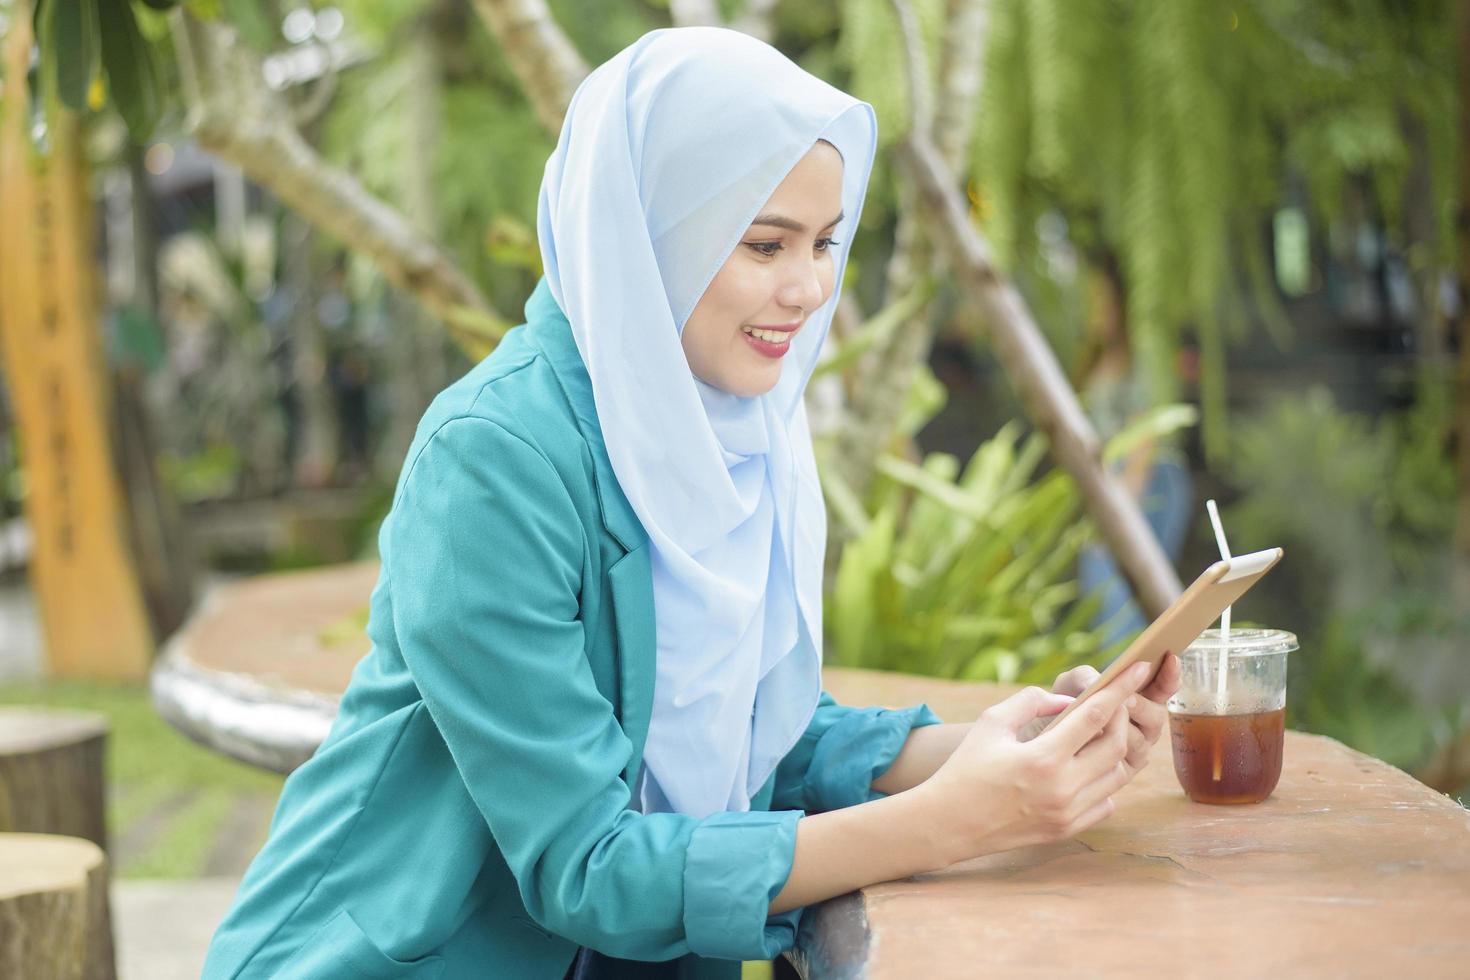 la donna musulmana con l'hijab sta lavorando con il computer portatile nella caffetteria foto